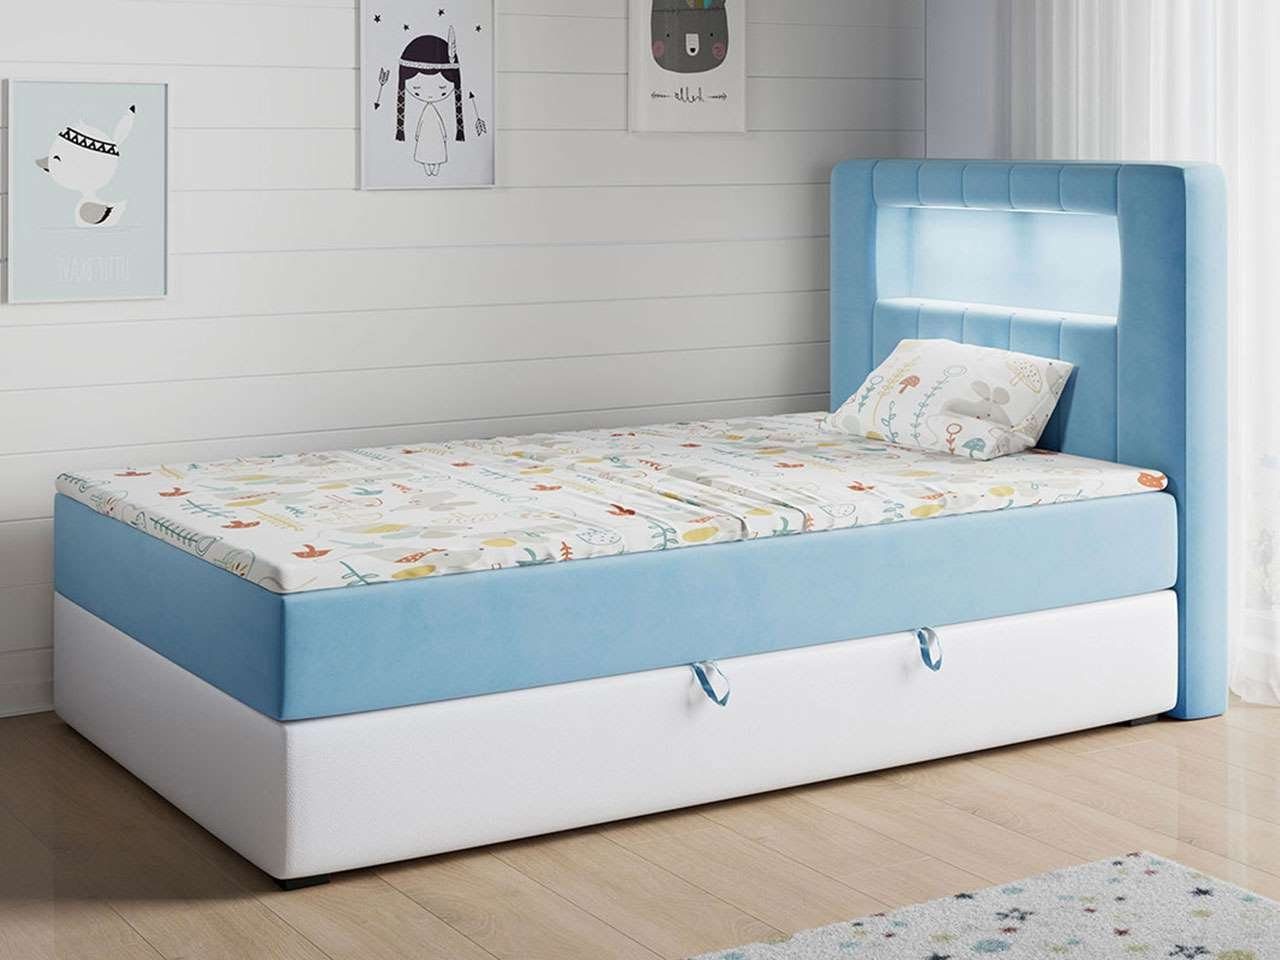 MKS MÖBEL Kinderbett GOLD 1 JUNIOR, Funktionsbett Bett Boxspringbetten für Kinderzimmer, Einzelbetten Blau und Weiß